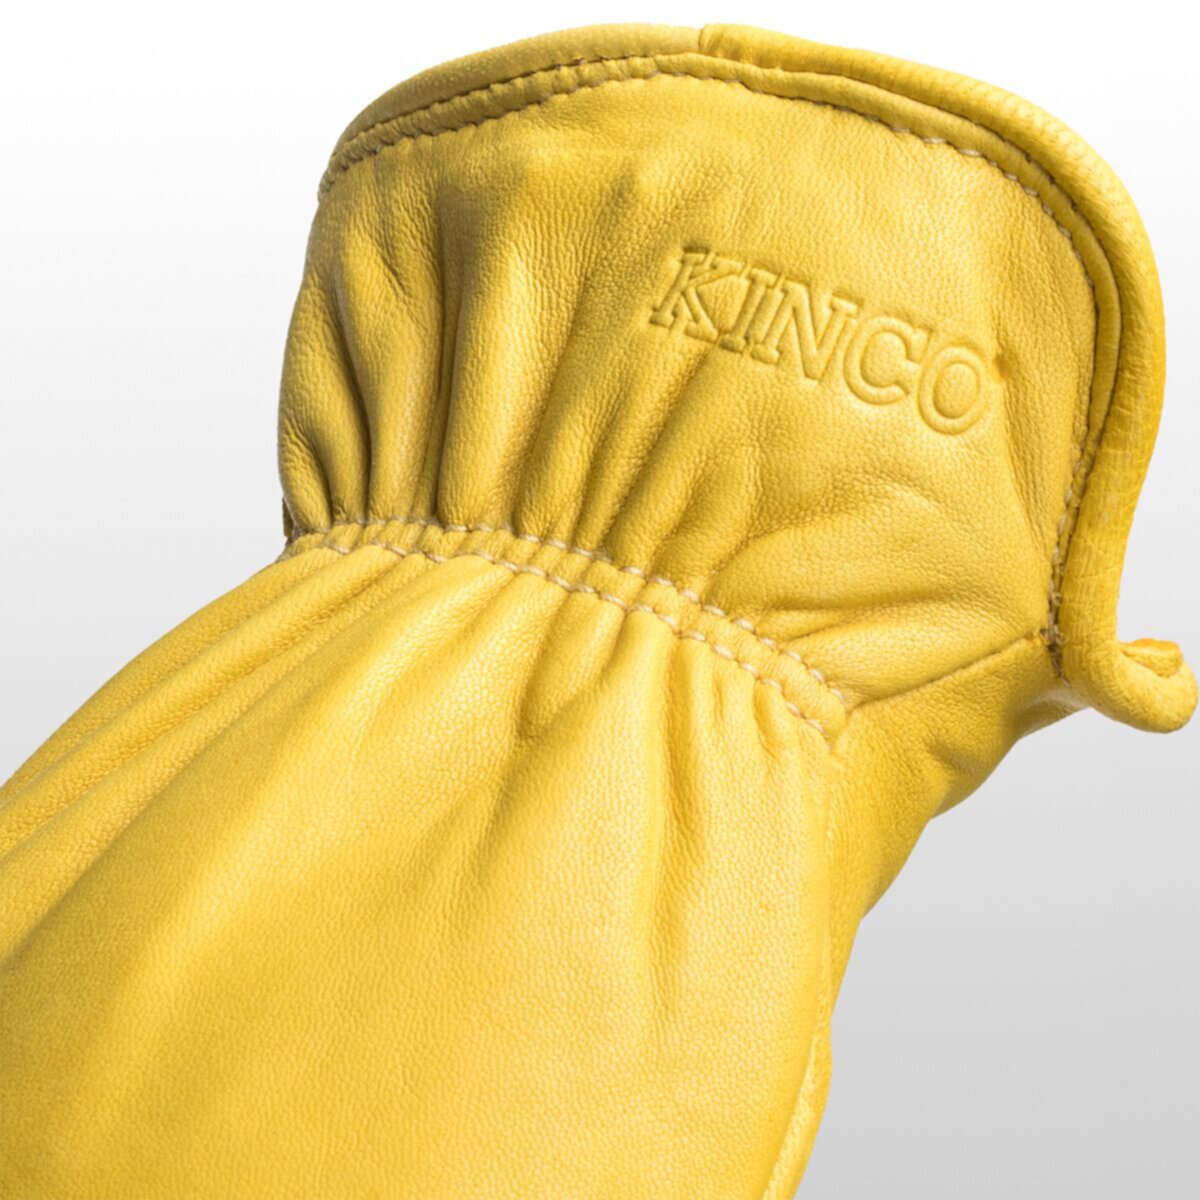 Перчатки для водителя из оленьей кожи премиум-класса на подкладке Kinco